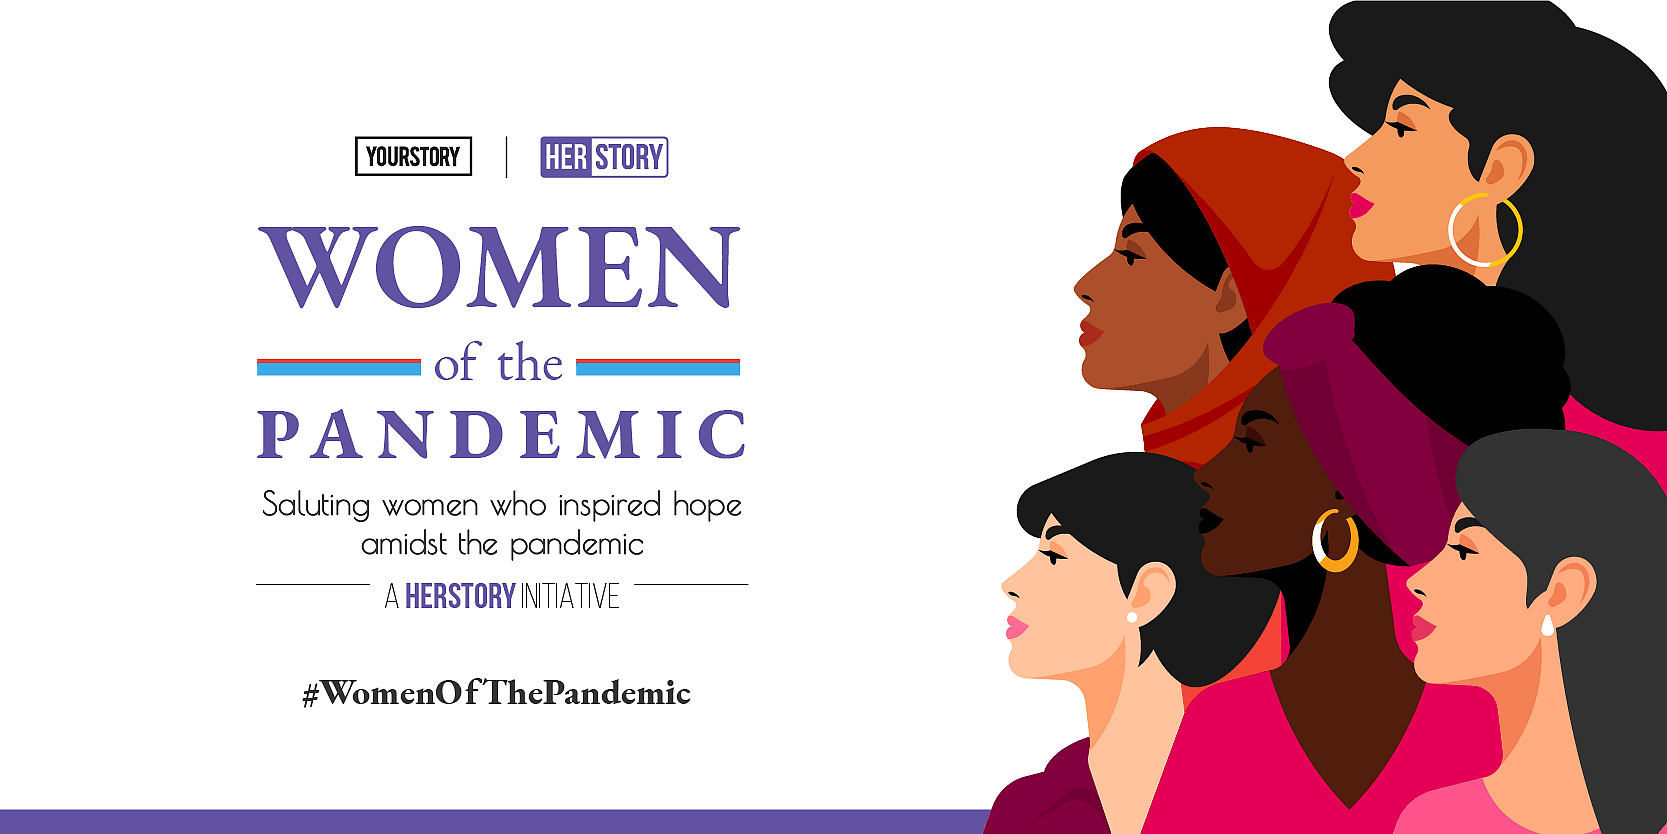 Women of the Pandemic: यह जरूरी है कि हमें मिली सीख को न भूलें - नमिता थापर